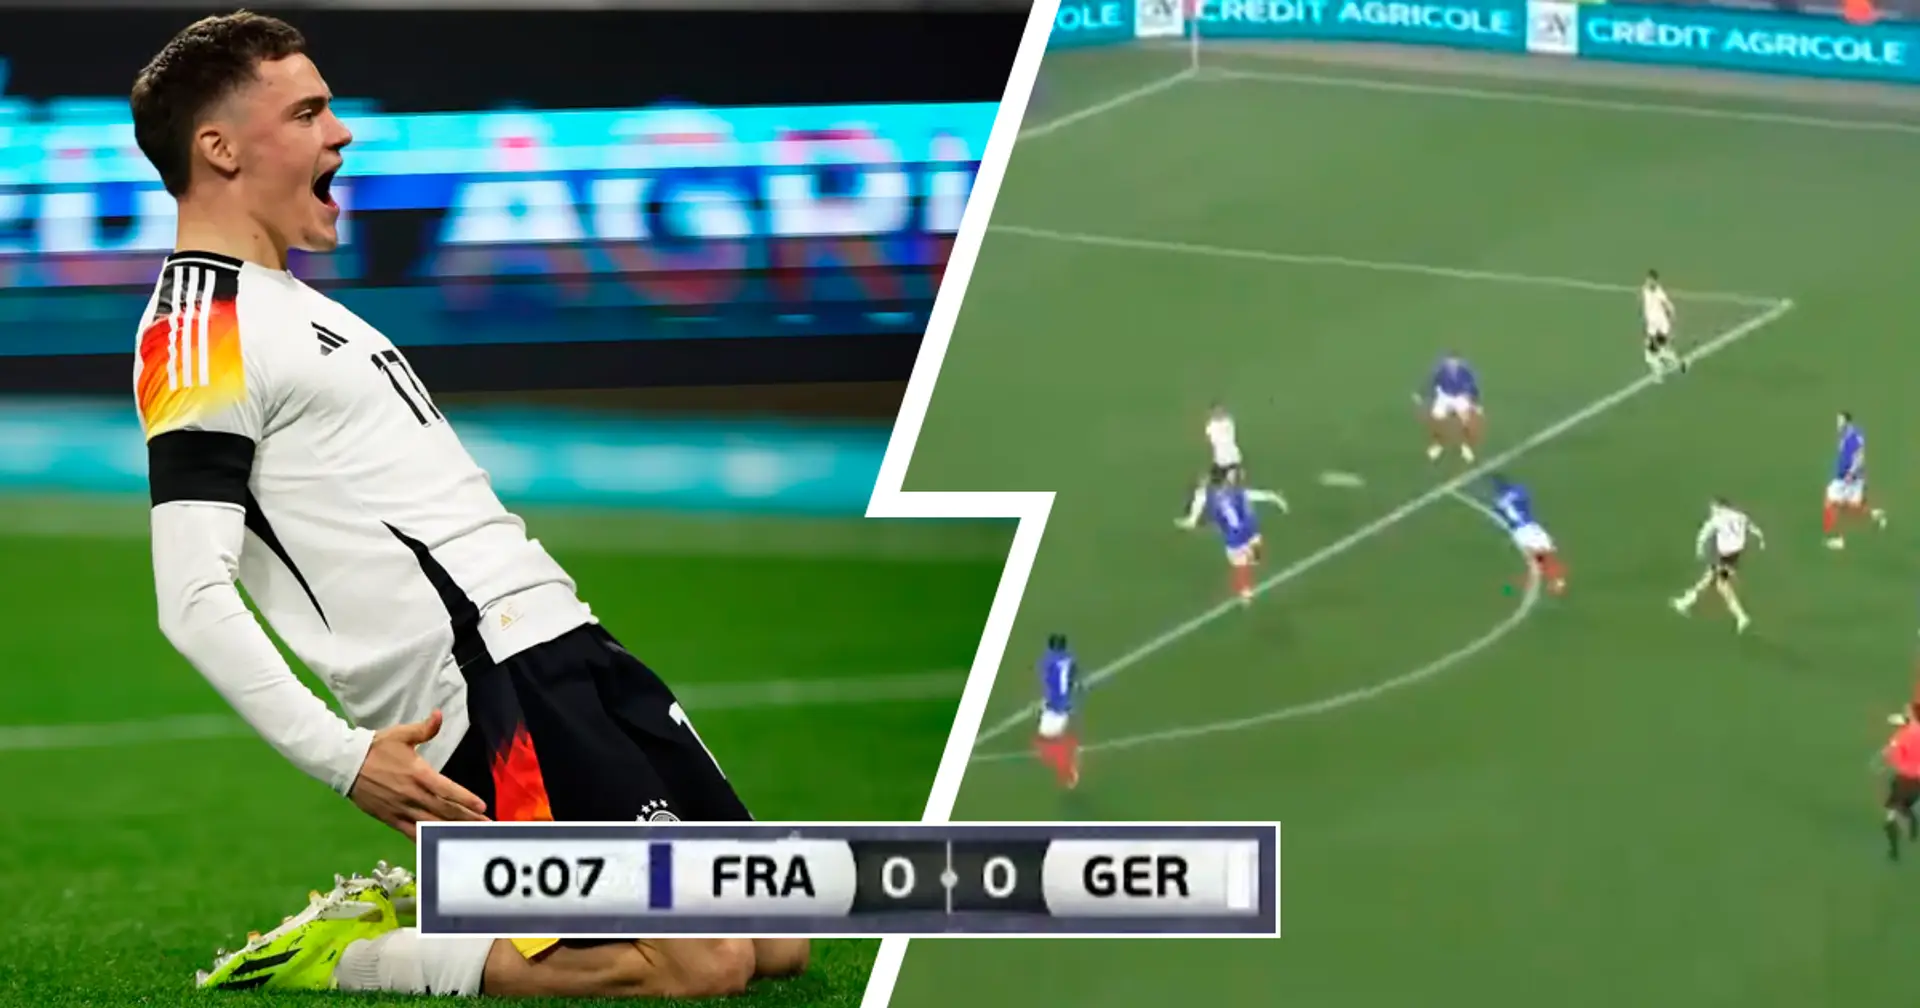 Eines der schnellsten Tore aller Zeiten: Deutschland schießt Eröffnungstor gegen Frankreich innerhalb 10 Sekunden